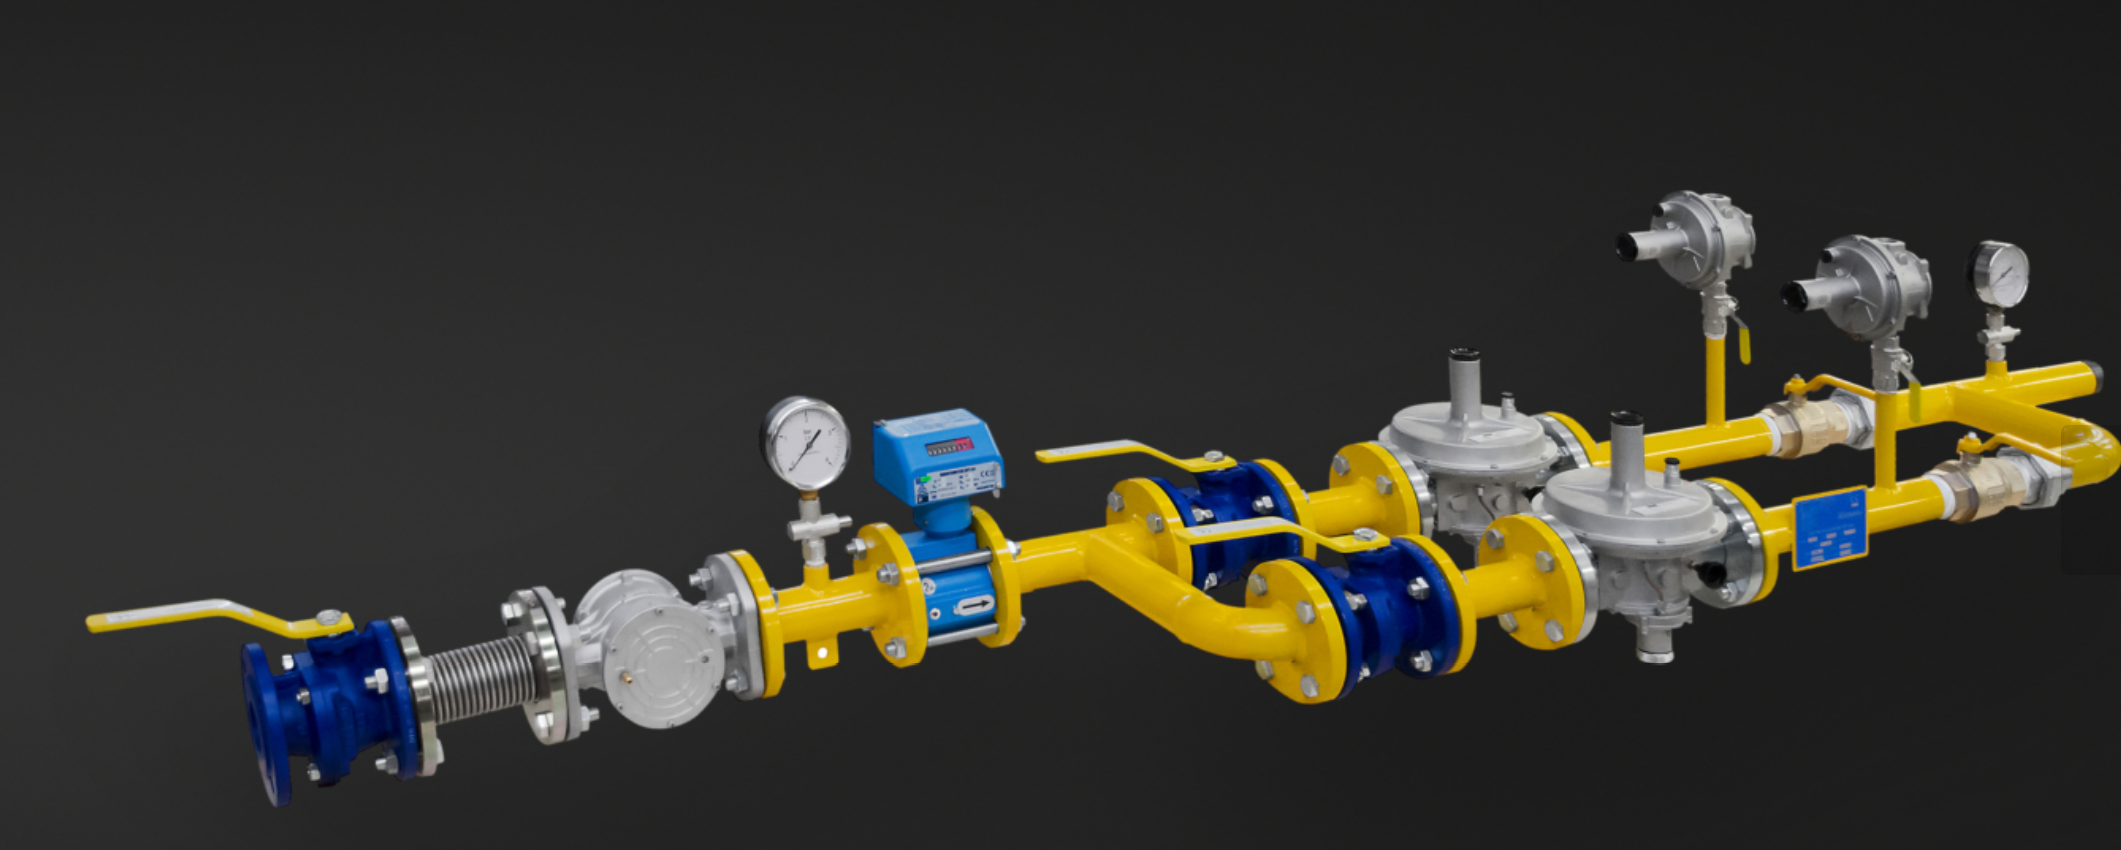 Hydraulic Gear Pump 21MPa Work Efficiently And Flat Key 0.8ML/R 4300 RPM 21MPa 